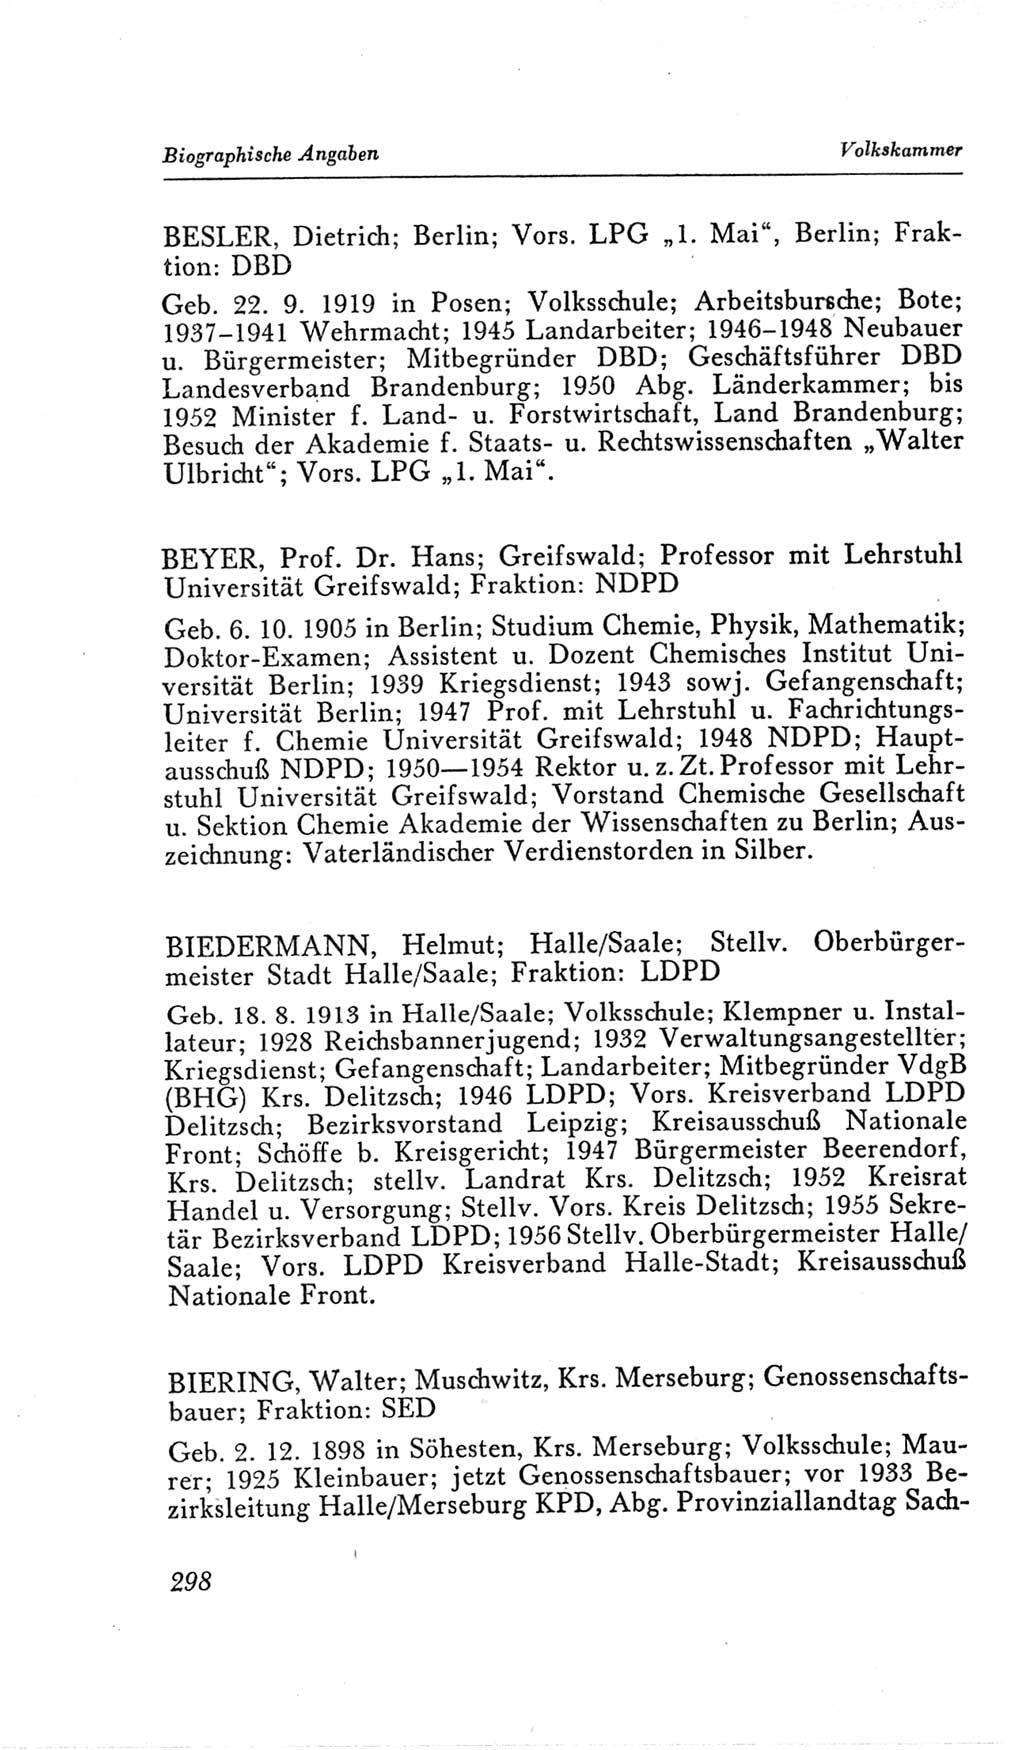 Handbuch der Volkskammer (VK) der Deutschen Demokratischen Republik (DDR), 2. Wahlperiode 1954-1958, Seite 298 (Hdb. VK. DDR, 2. WP. 1954-1958, S. 298)